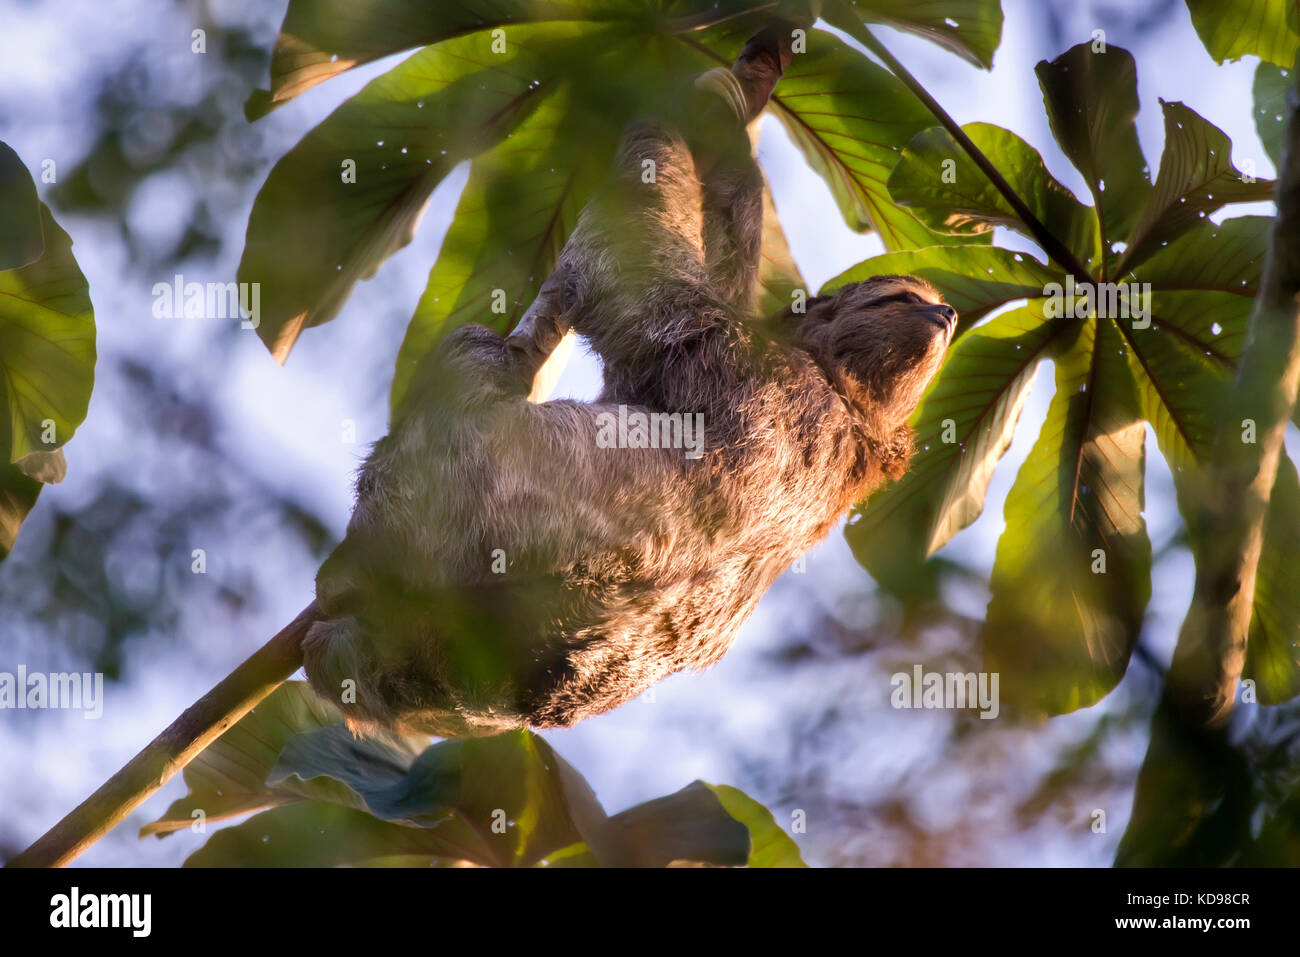 'Preguiça-comum (Bradypus variegatus) fotografado em Linhares, Espírito Santo -  Sudeste do Brasil. Bioma Mata Atlântica. Registro feito em 2013.      Stock Photo